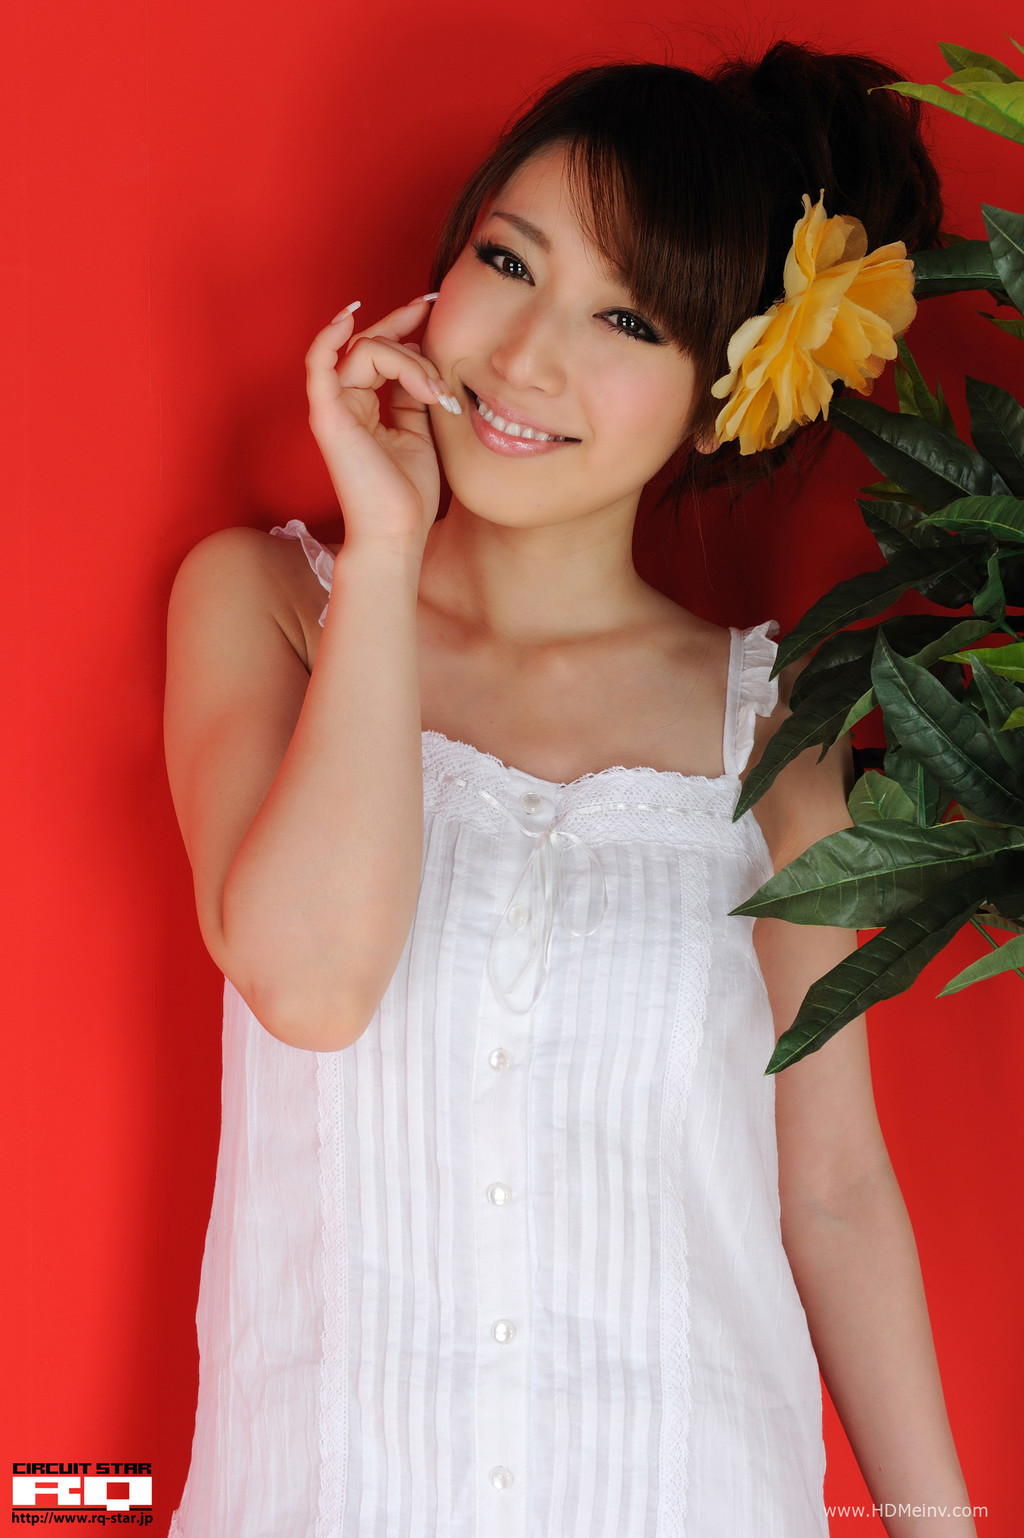 日本RQ-Star美女套图第273期 Emi Shimizu 清水恵美 Private Dress